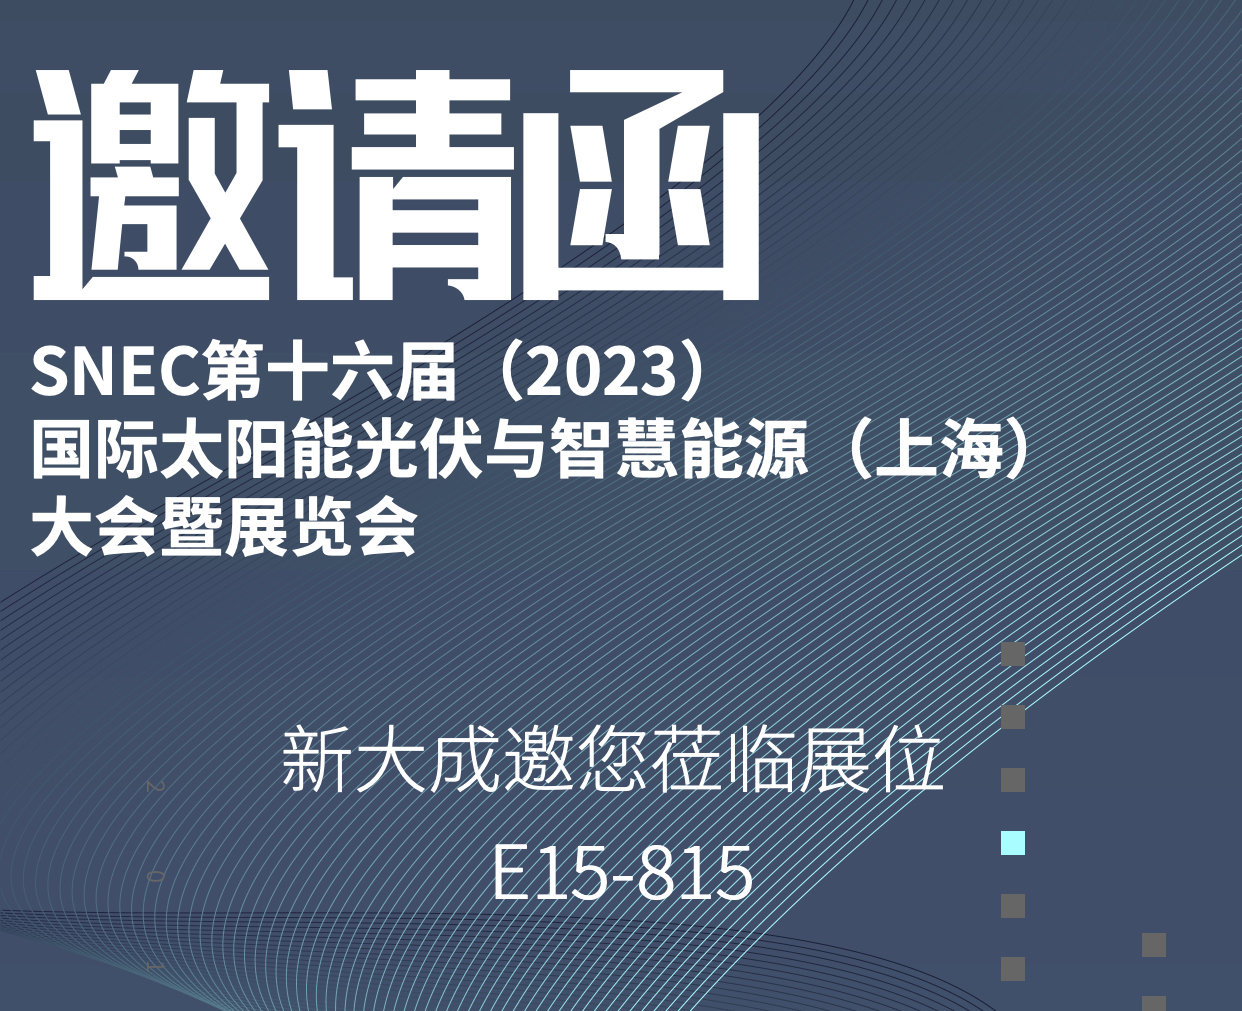 展会邀请|新大成诚邀您参加SNEC第十六届(2023)国际太阳能光伏与智慧能源 (上海)展览会